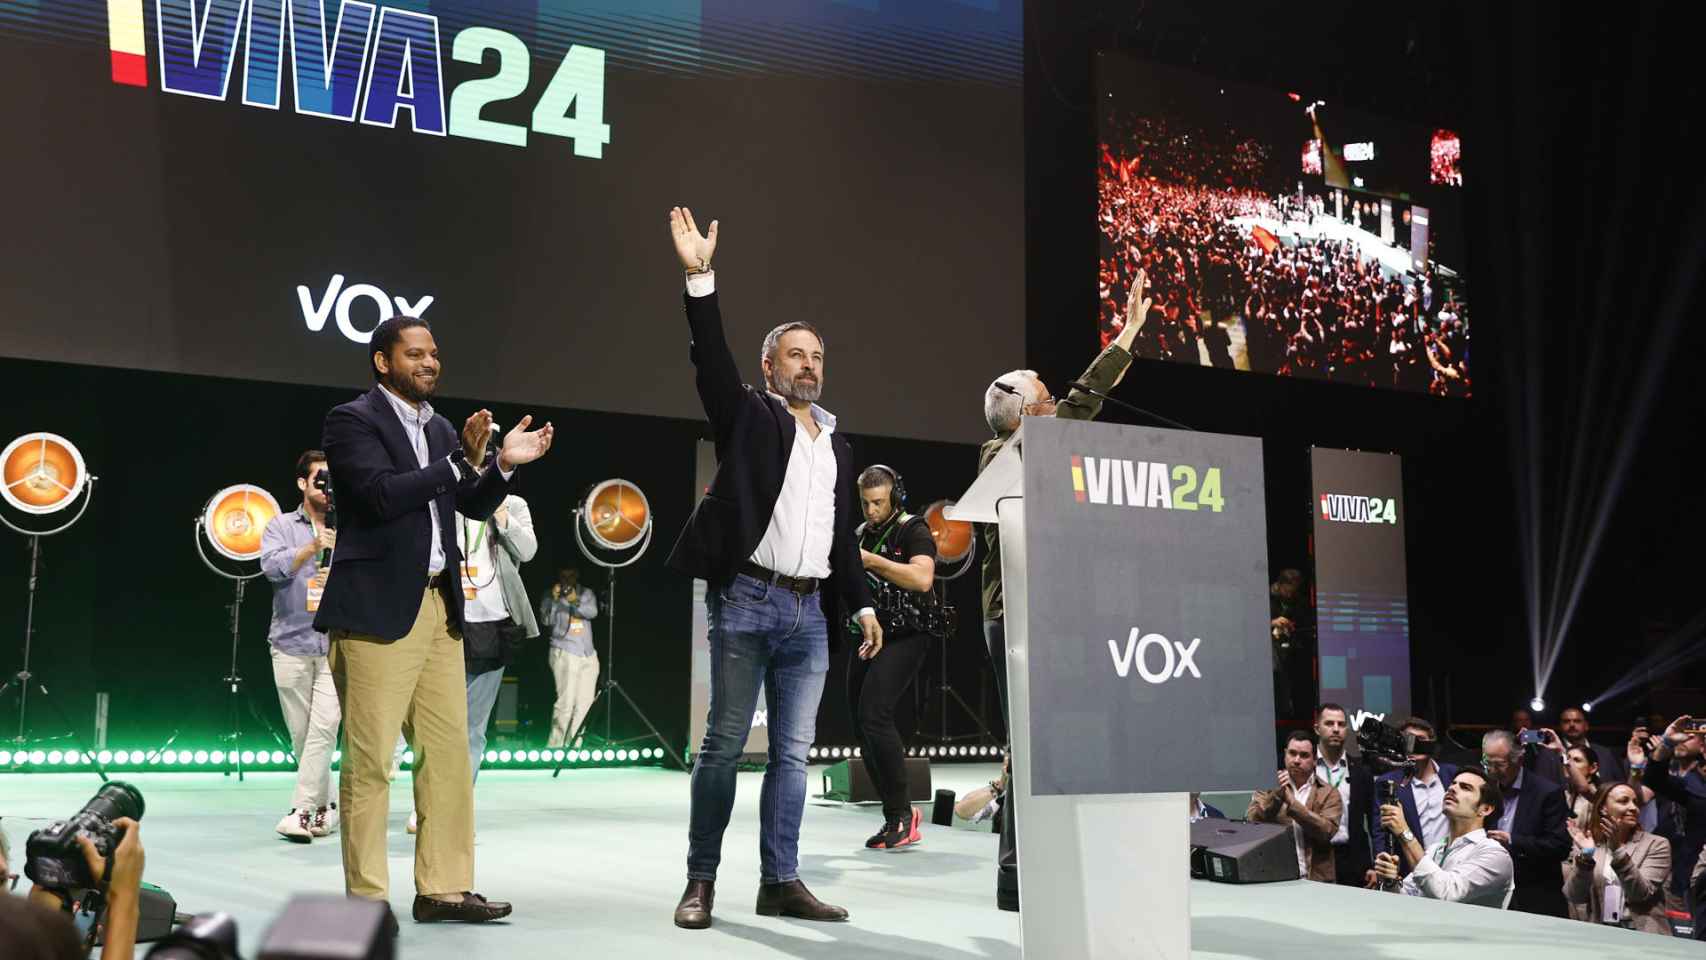 Ortega Lara, Ignacio Garriga y Santiago Abascal, al inicio de la convención política de Vox 'Europa Viva 24'.